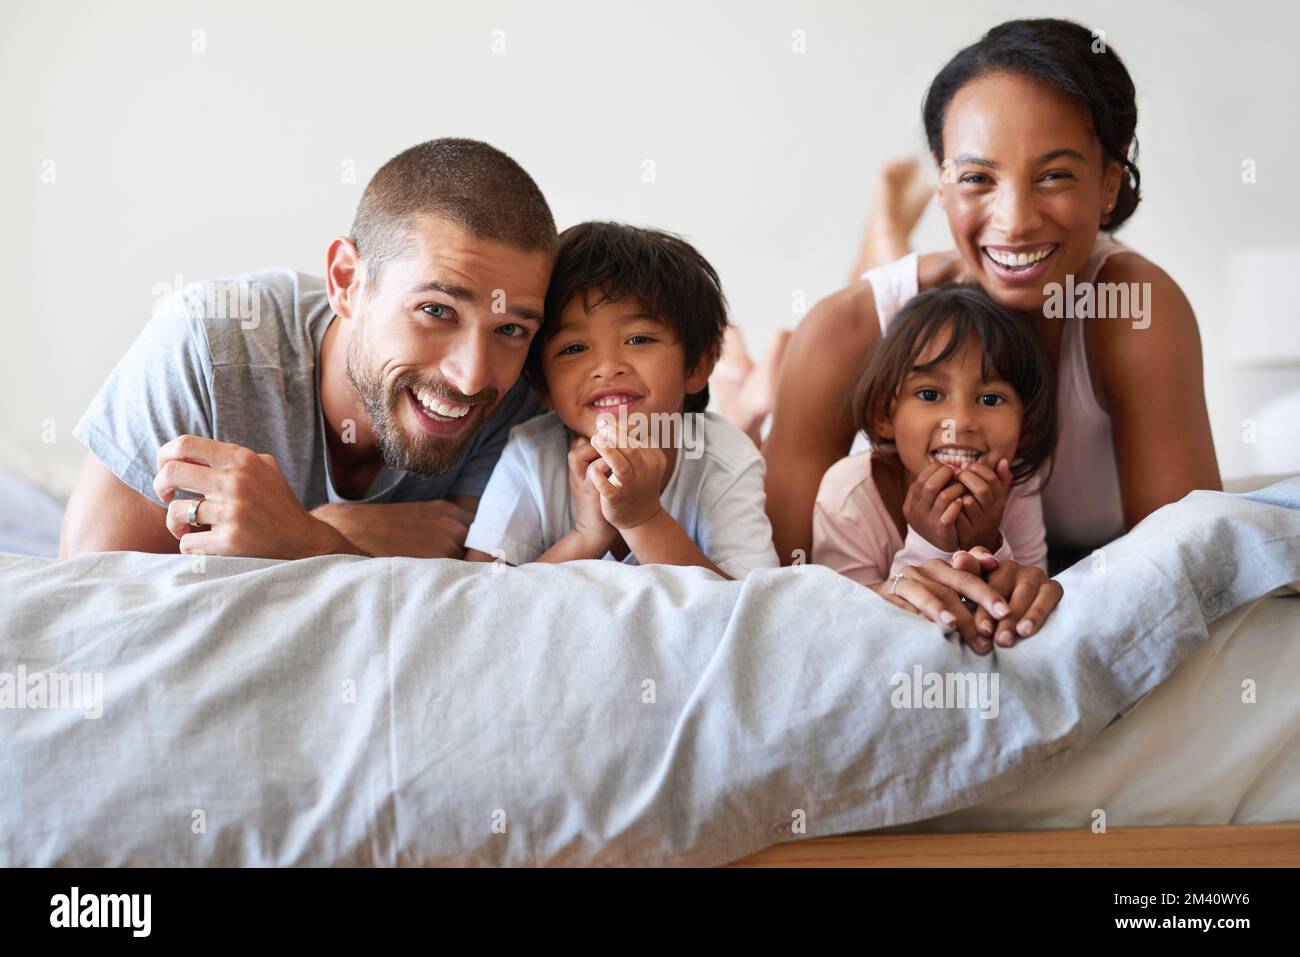 Unsere perfekte kleine Familie. Porträt einer wunderschönen, jungen vierköpfigen Familie, die sich zu Hause im Bett anfreundet und Zeit miteinander verbringt. Stockfoto